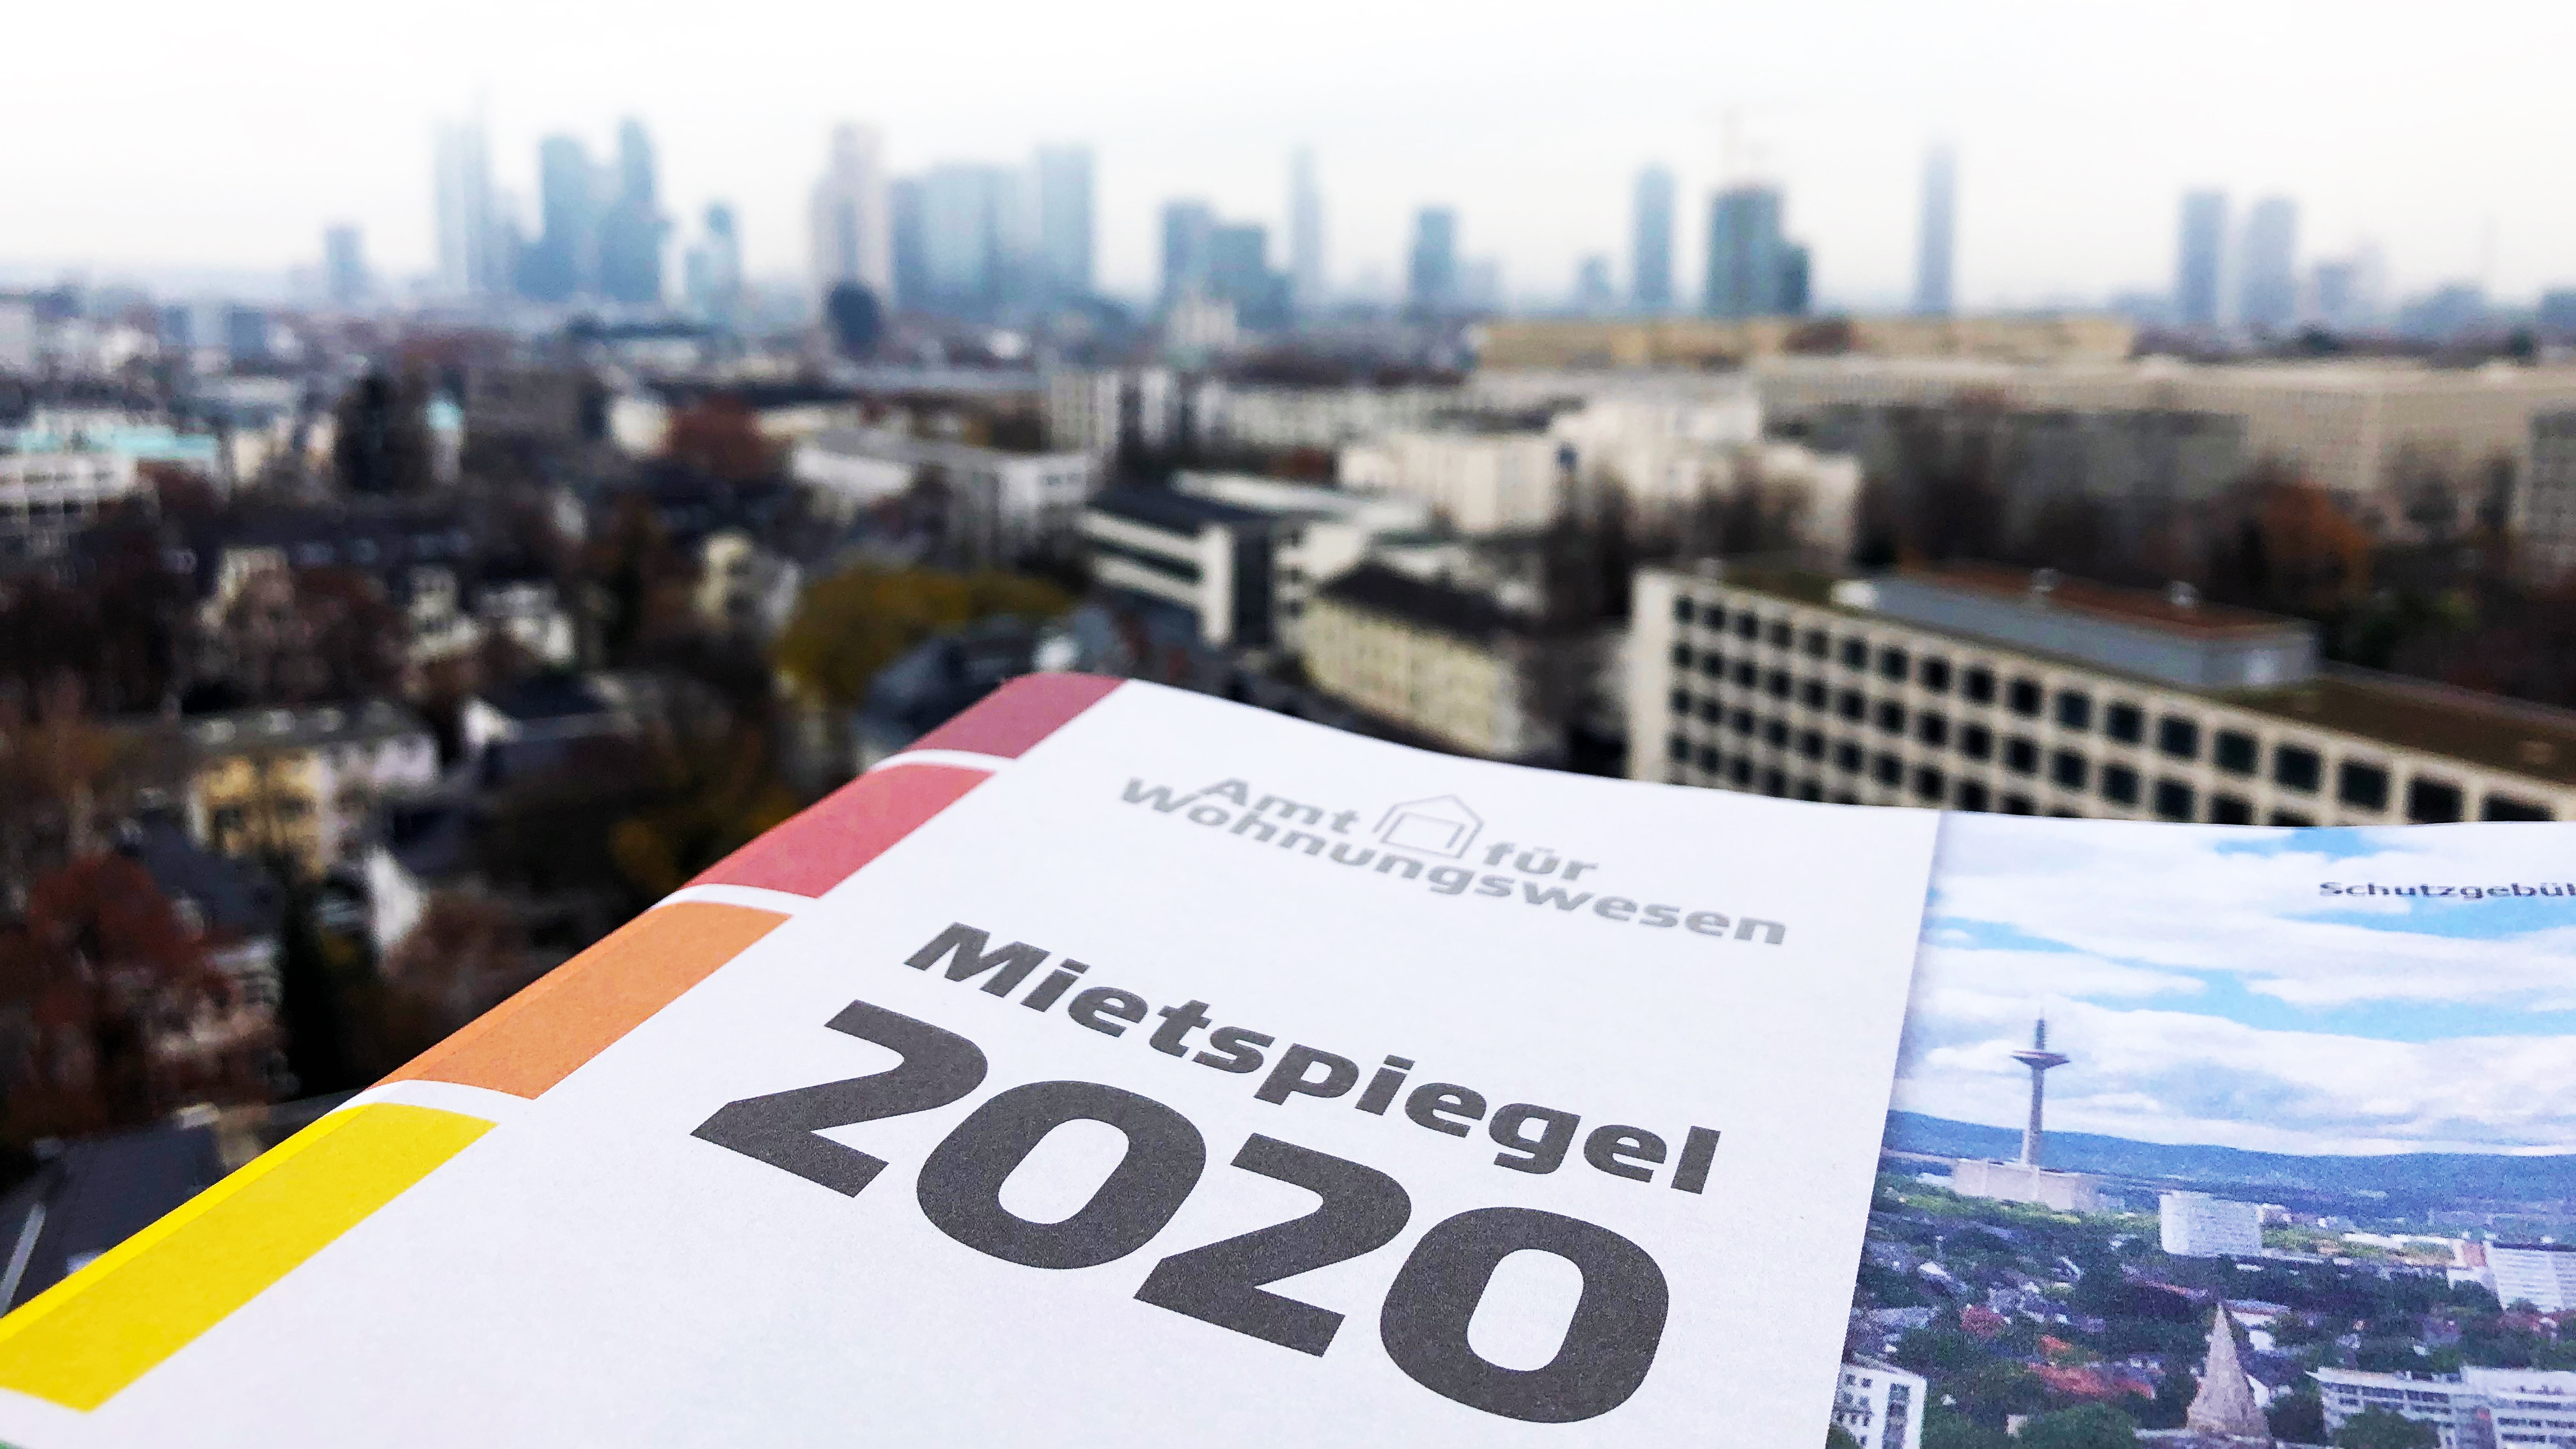 Die Broschüre des Mietspiegels 2020 der Stadt Frankfurt am Main liegt vor der Kulisse Frankfurts.